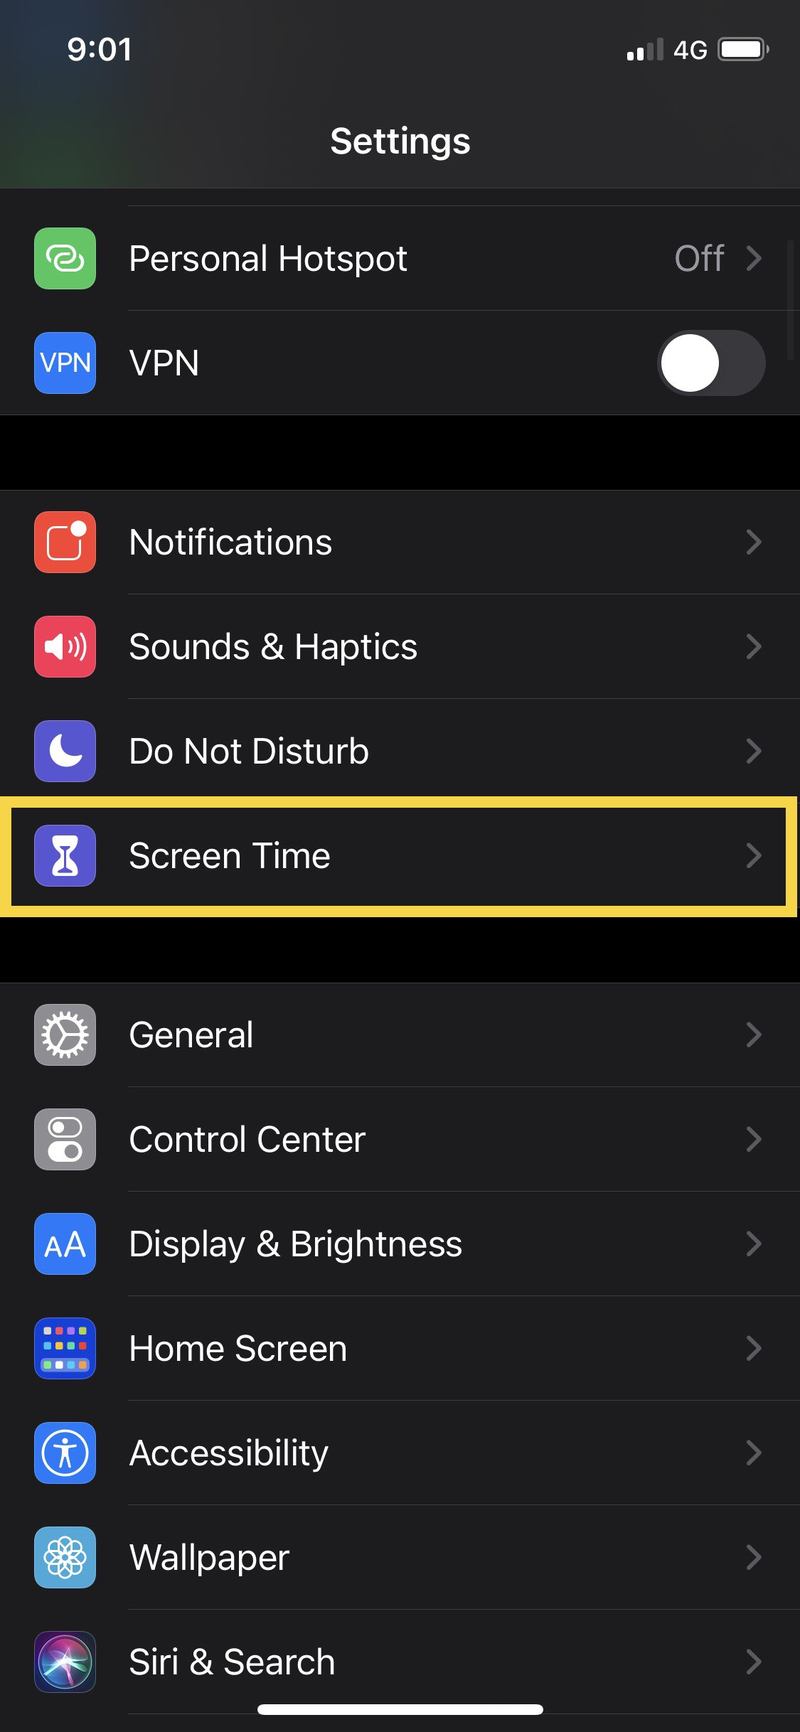 关闭屏幕时间密码在 iOS 中” />  </p>
<p>依赖“屏幕使用时间”的 iPhone 和 iPad 用户可以选择关闭 iOS 设备上的“屏幕使用时间”密码。这样一来，您或其他任何人都可以覆盖屏幕时间限制，而无需在设备上输入密码。 </p>
<p>请注意，关闭“屏幕使用时间”密码与<a href=